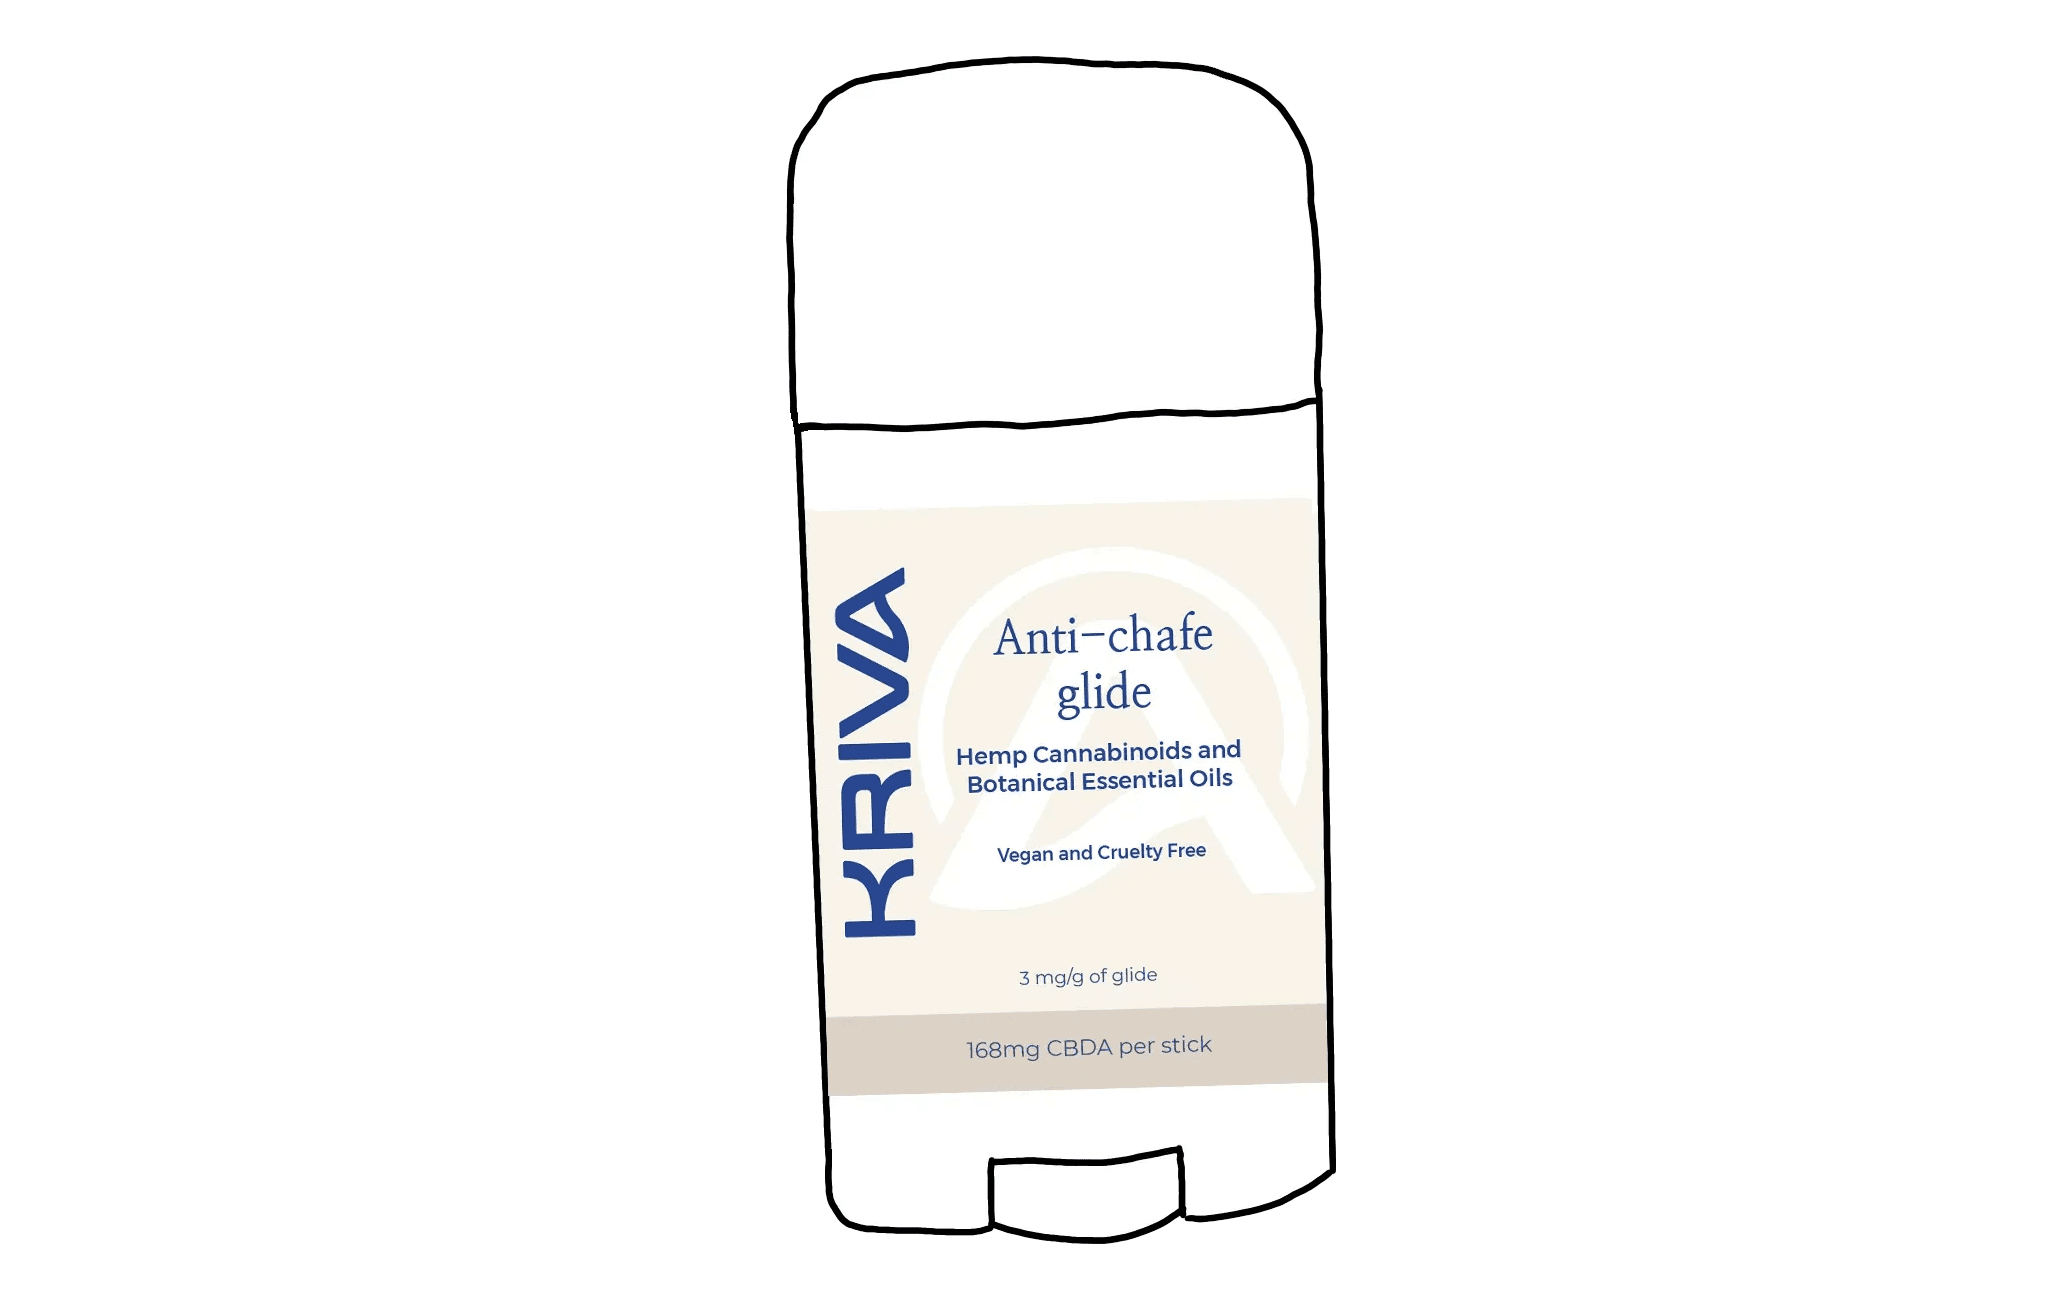 A drawing of Kriva's CBDa Anti-Chafe Glide product